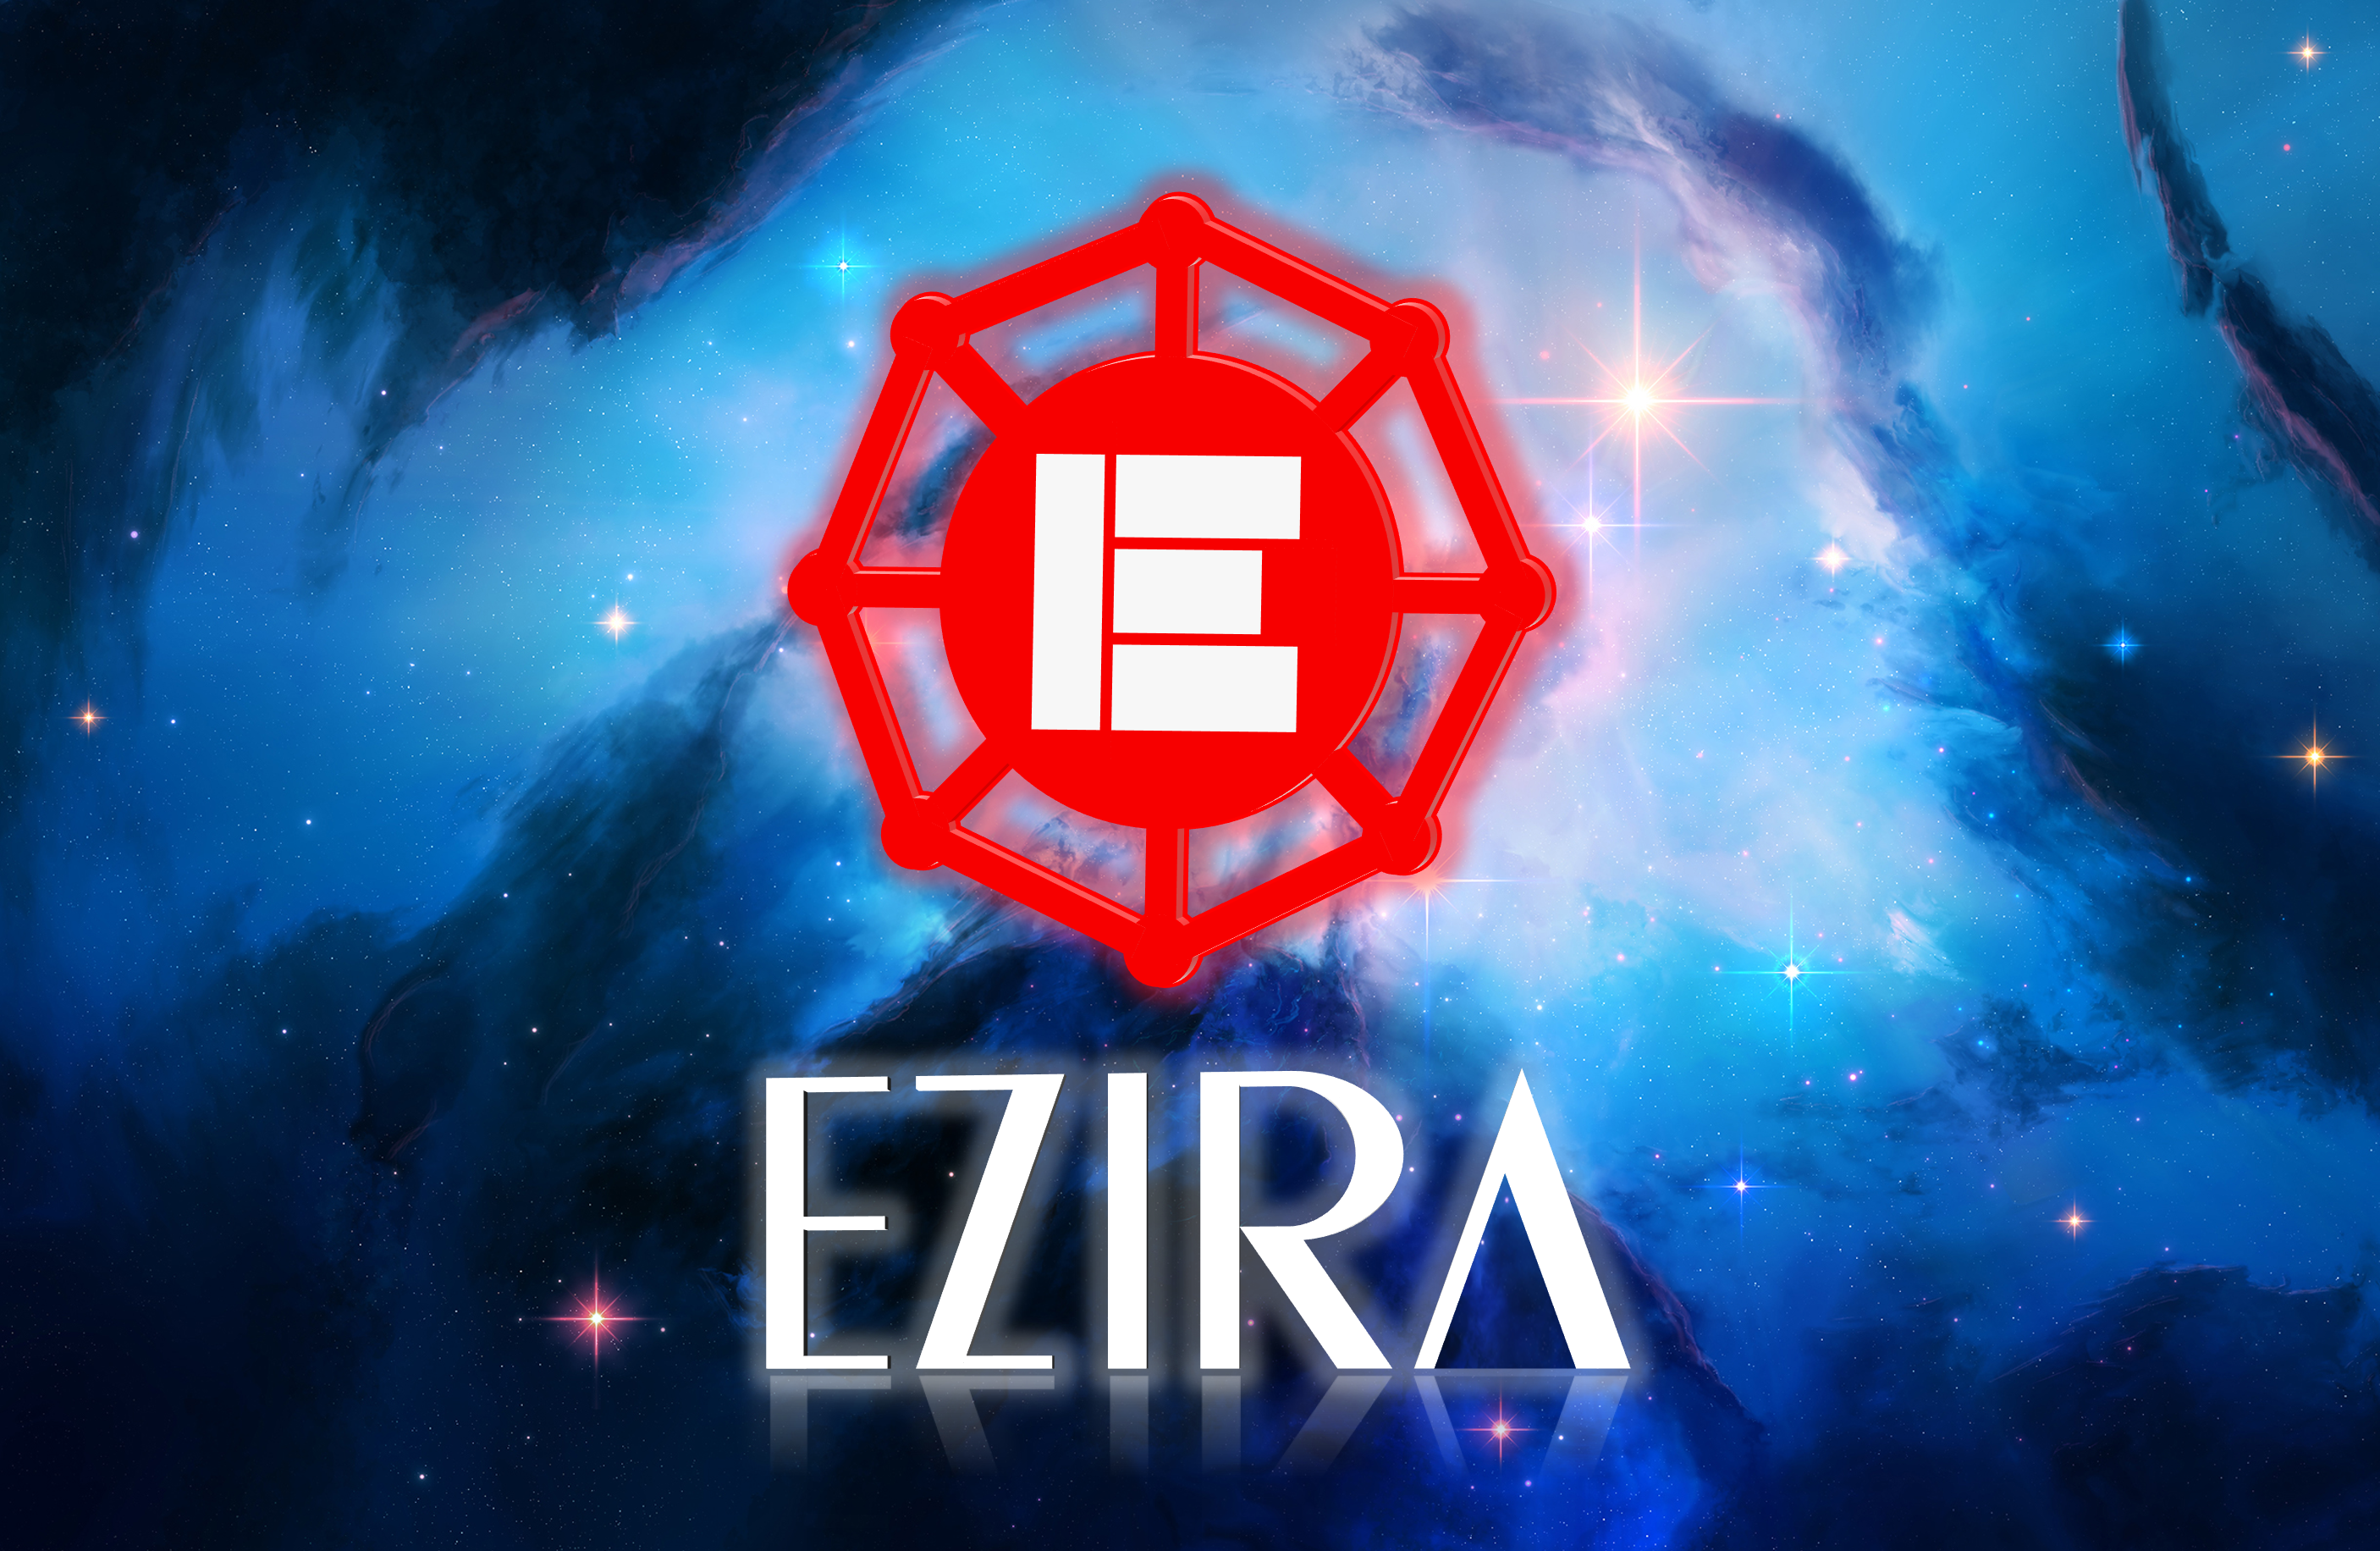 Ezira Nebula.png